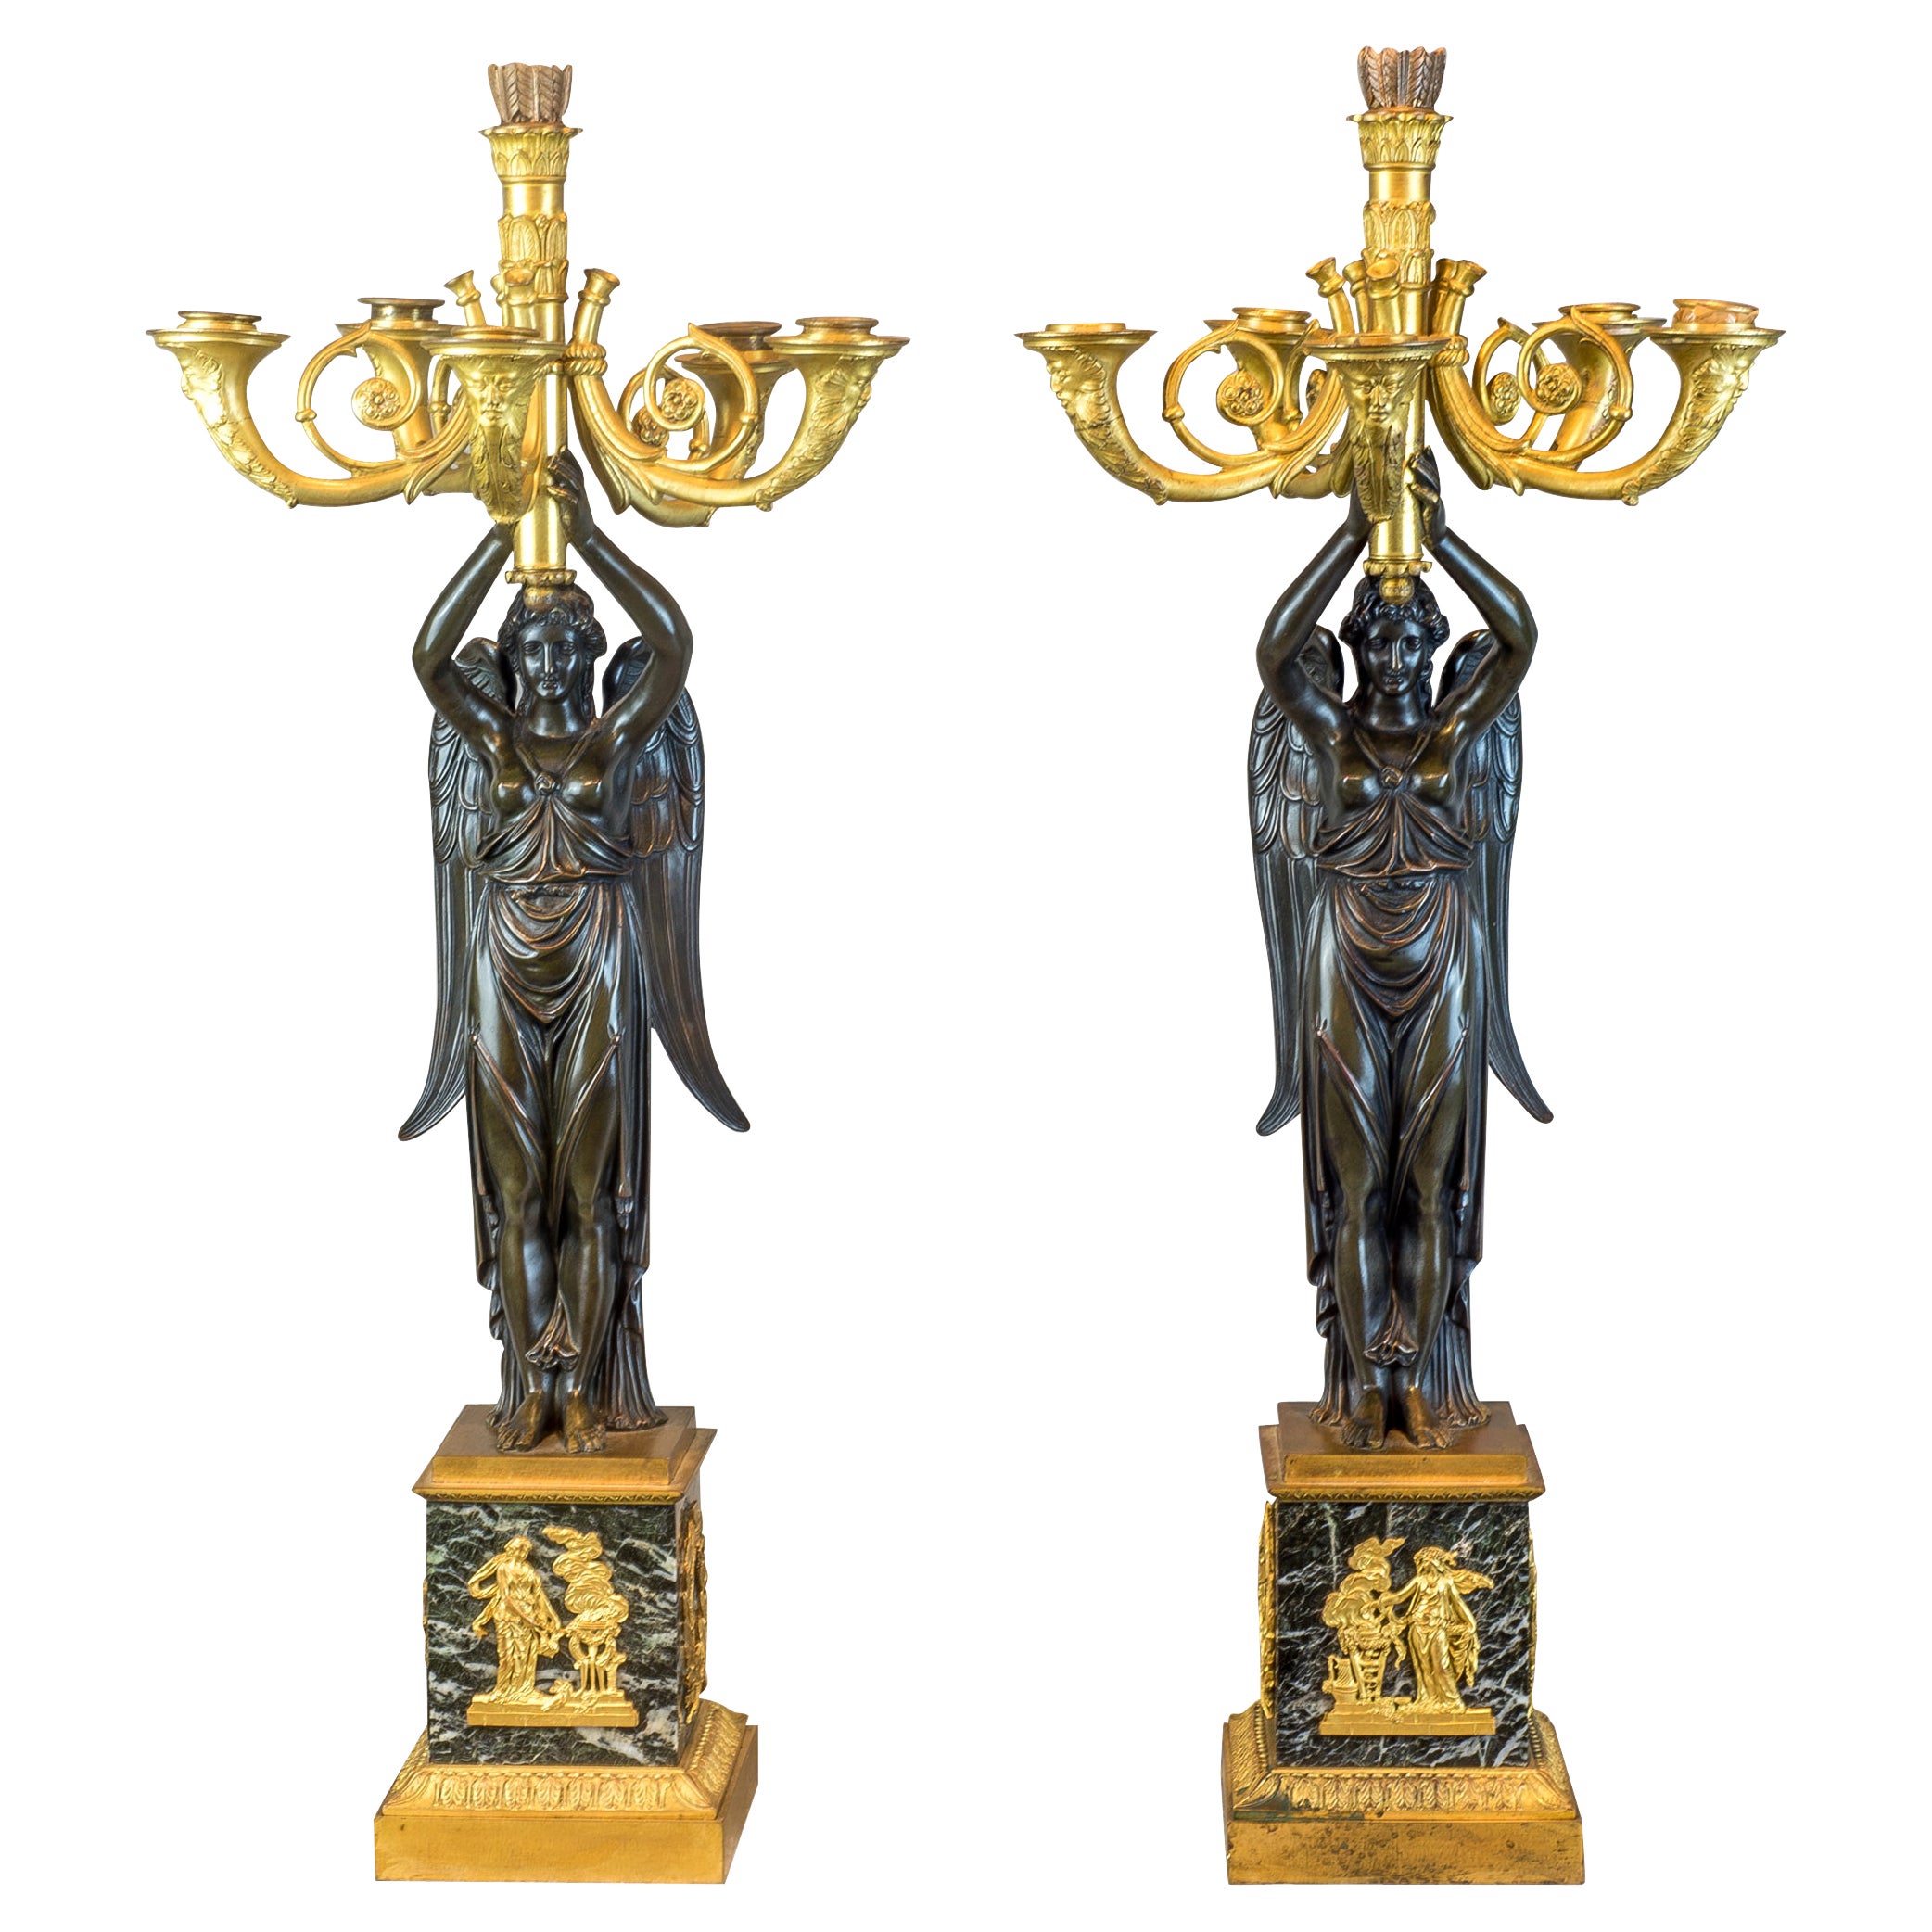  Paire de candélabres figuratifs Empire à six lumières en bronze doré et patiné